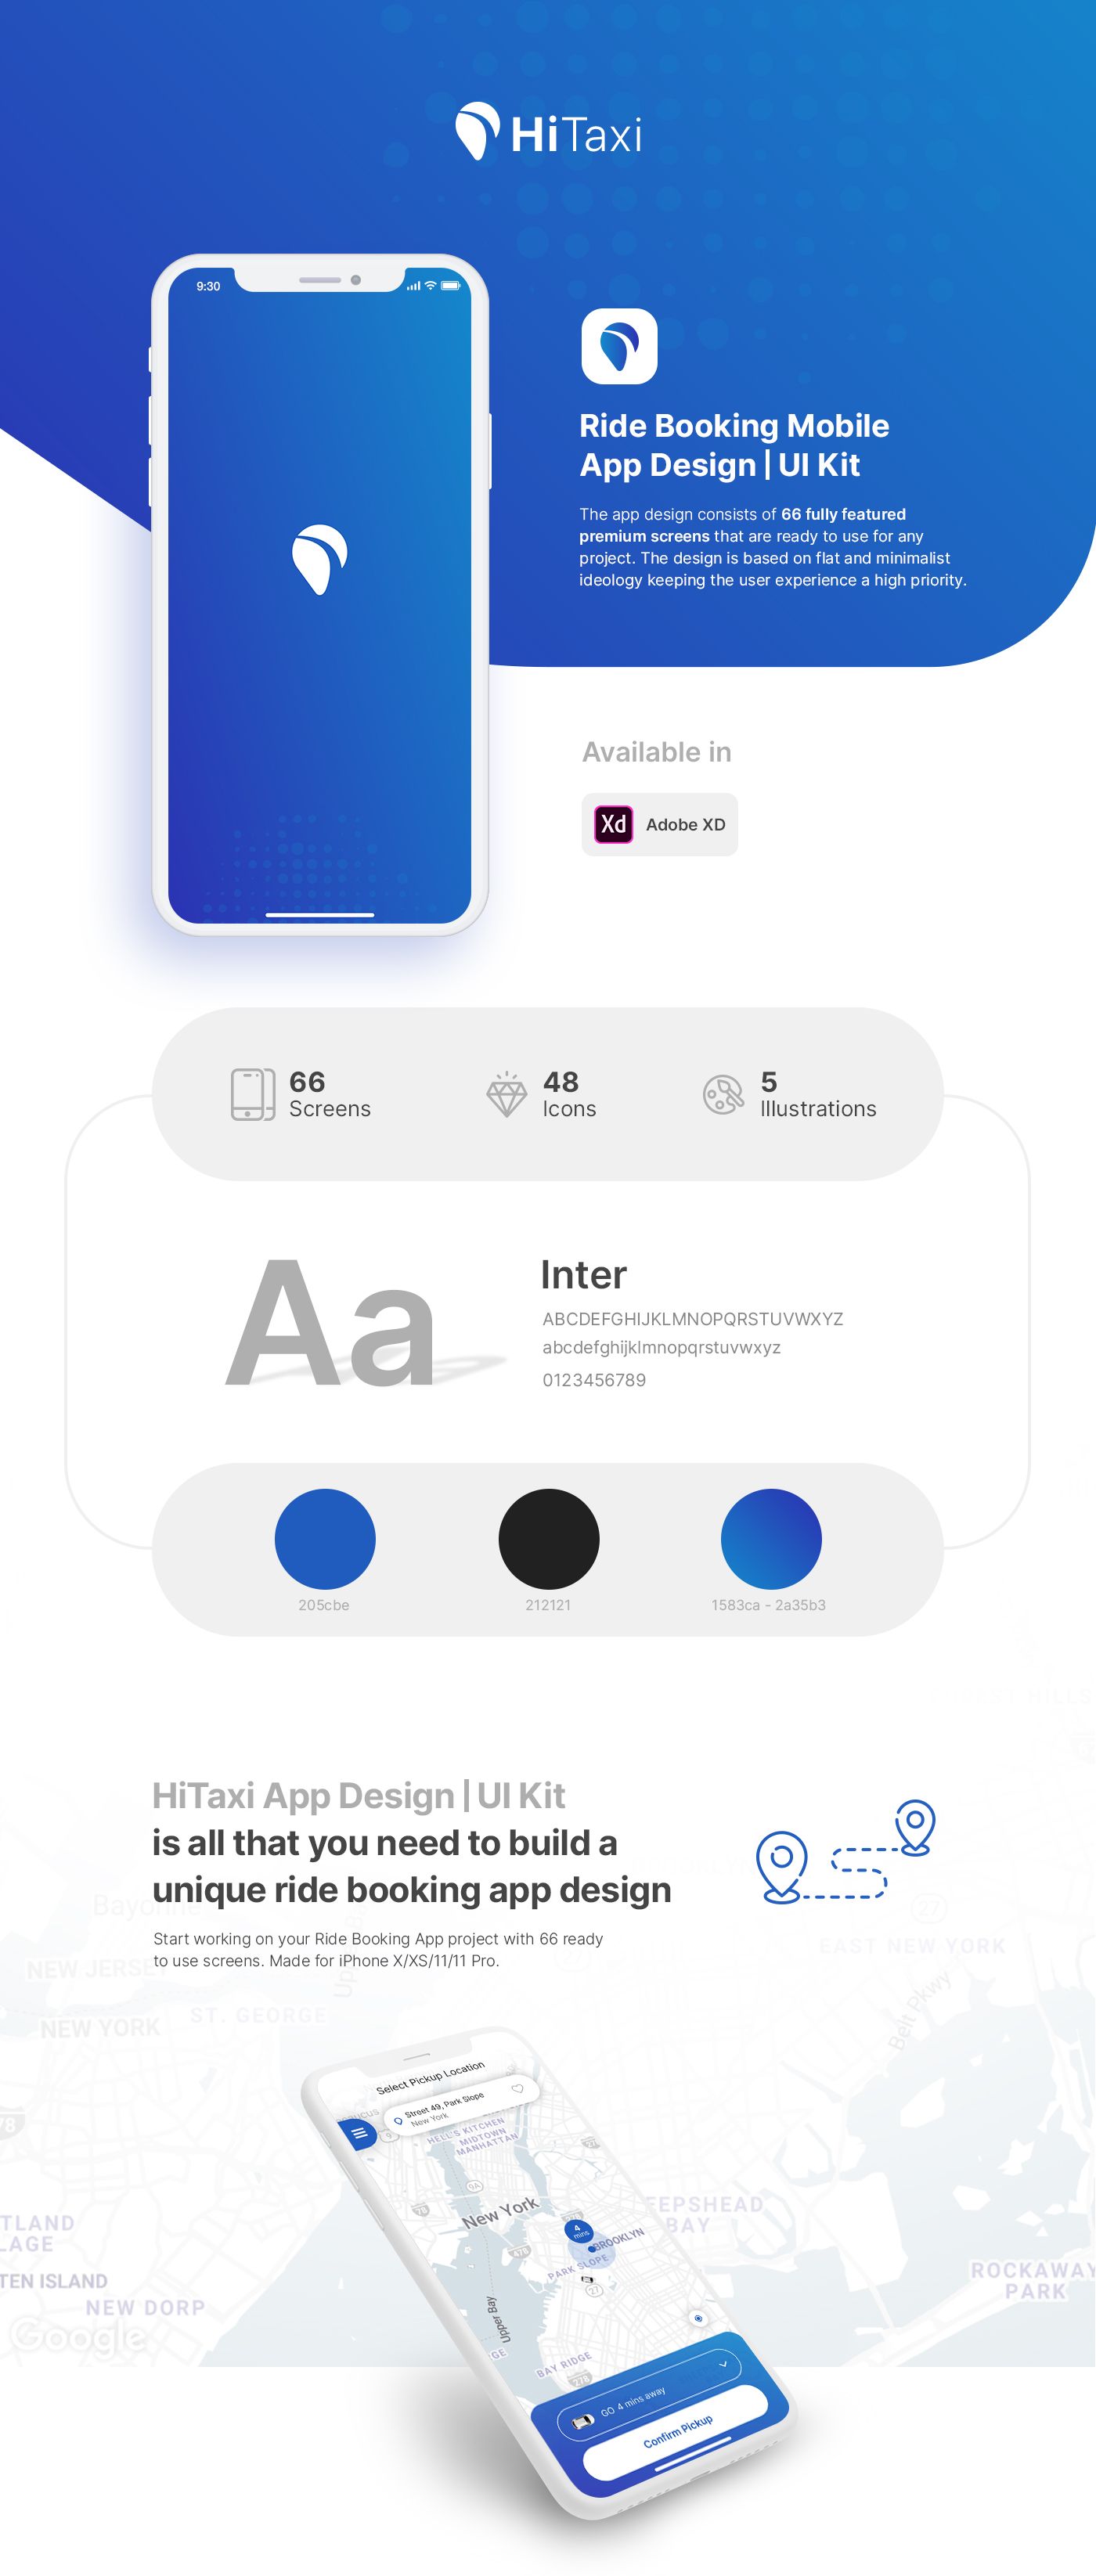 HiTaxi - Adobe XD UI Kit for Mobile App - 1